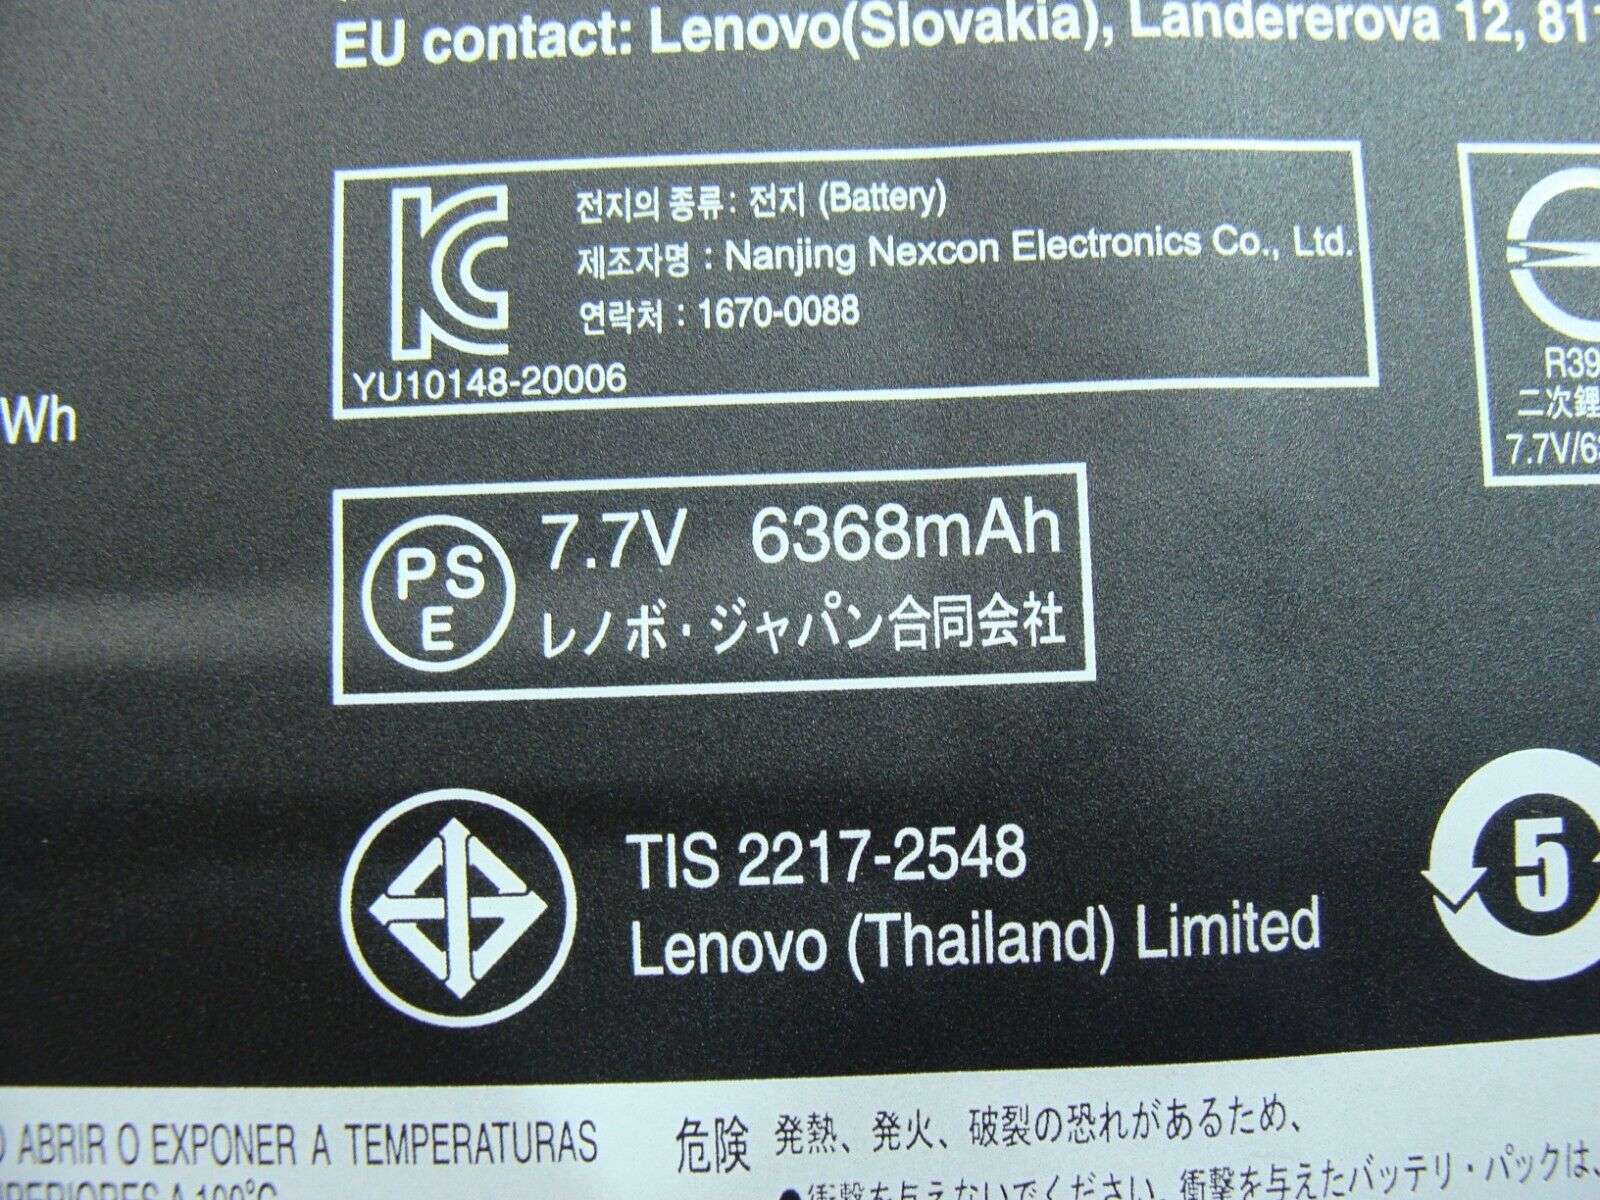 Lenovo Chromebook Flex 5 13.3